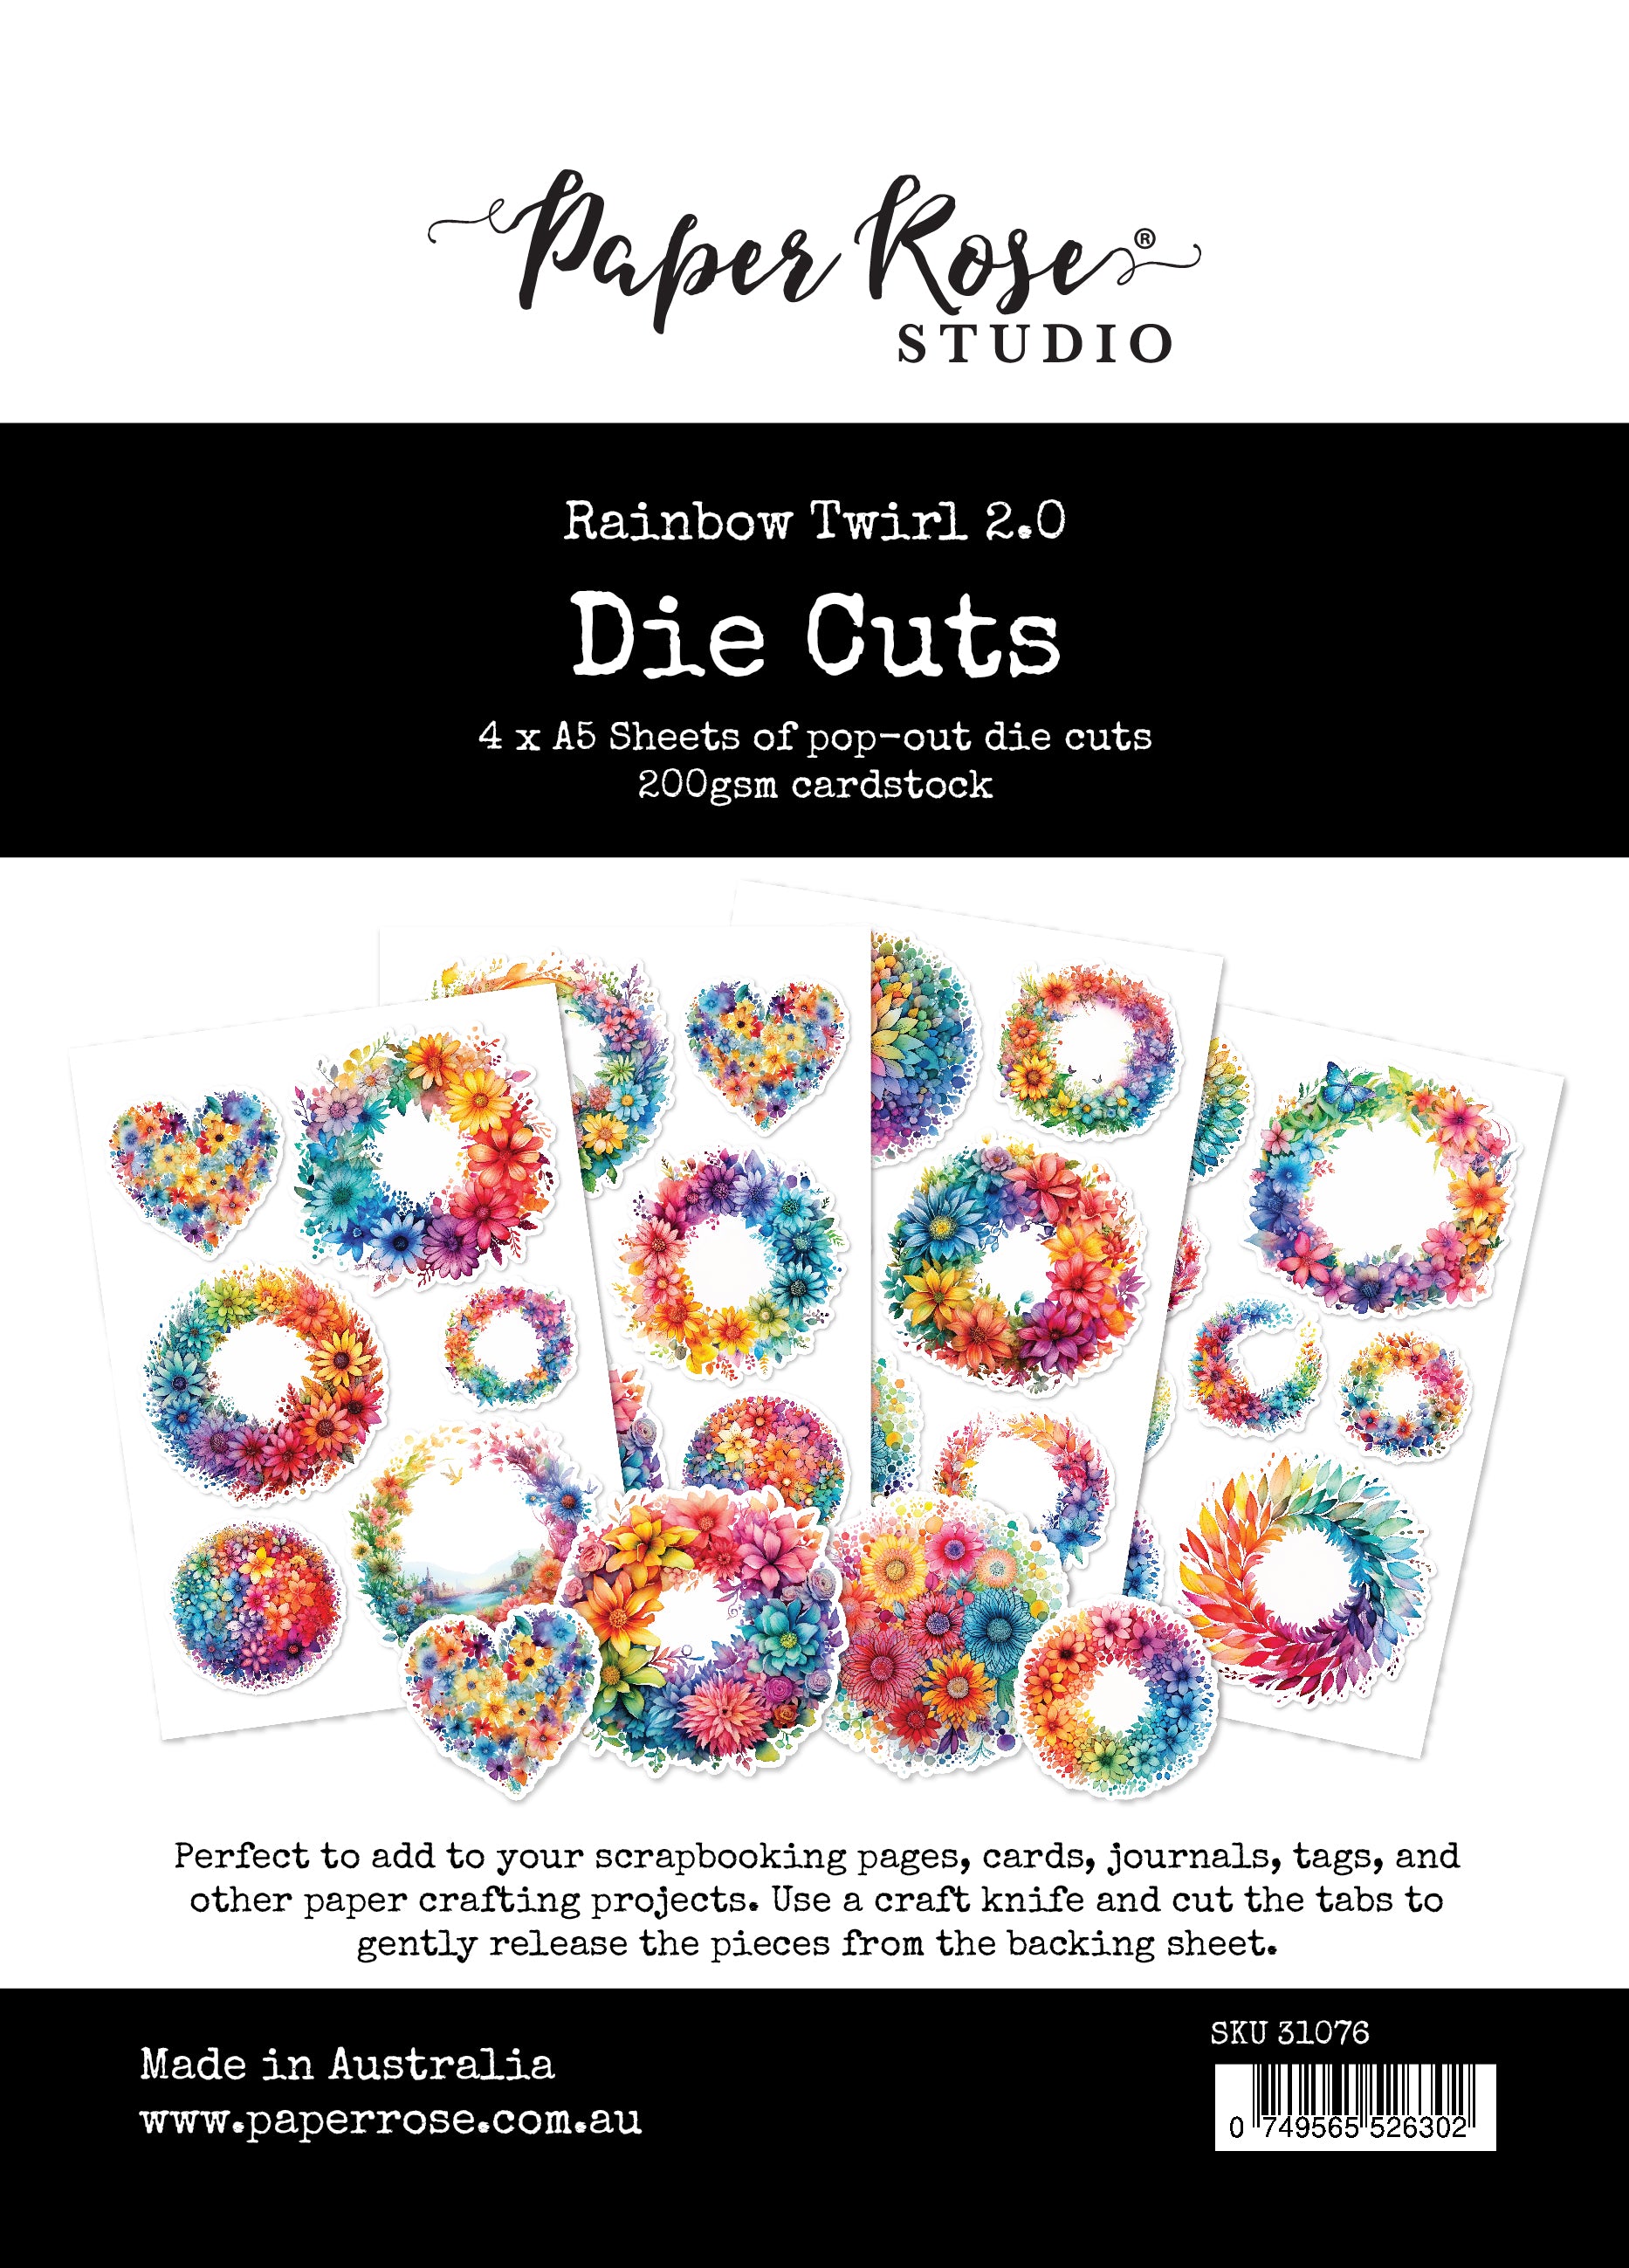 Rainbow Stamp & Die Set - Scrapbook & Cards Today Magazine